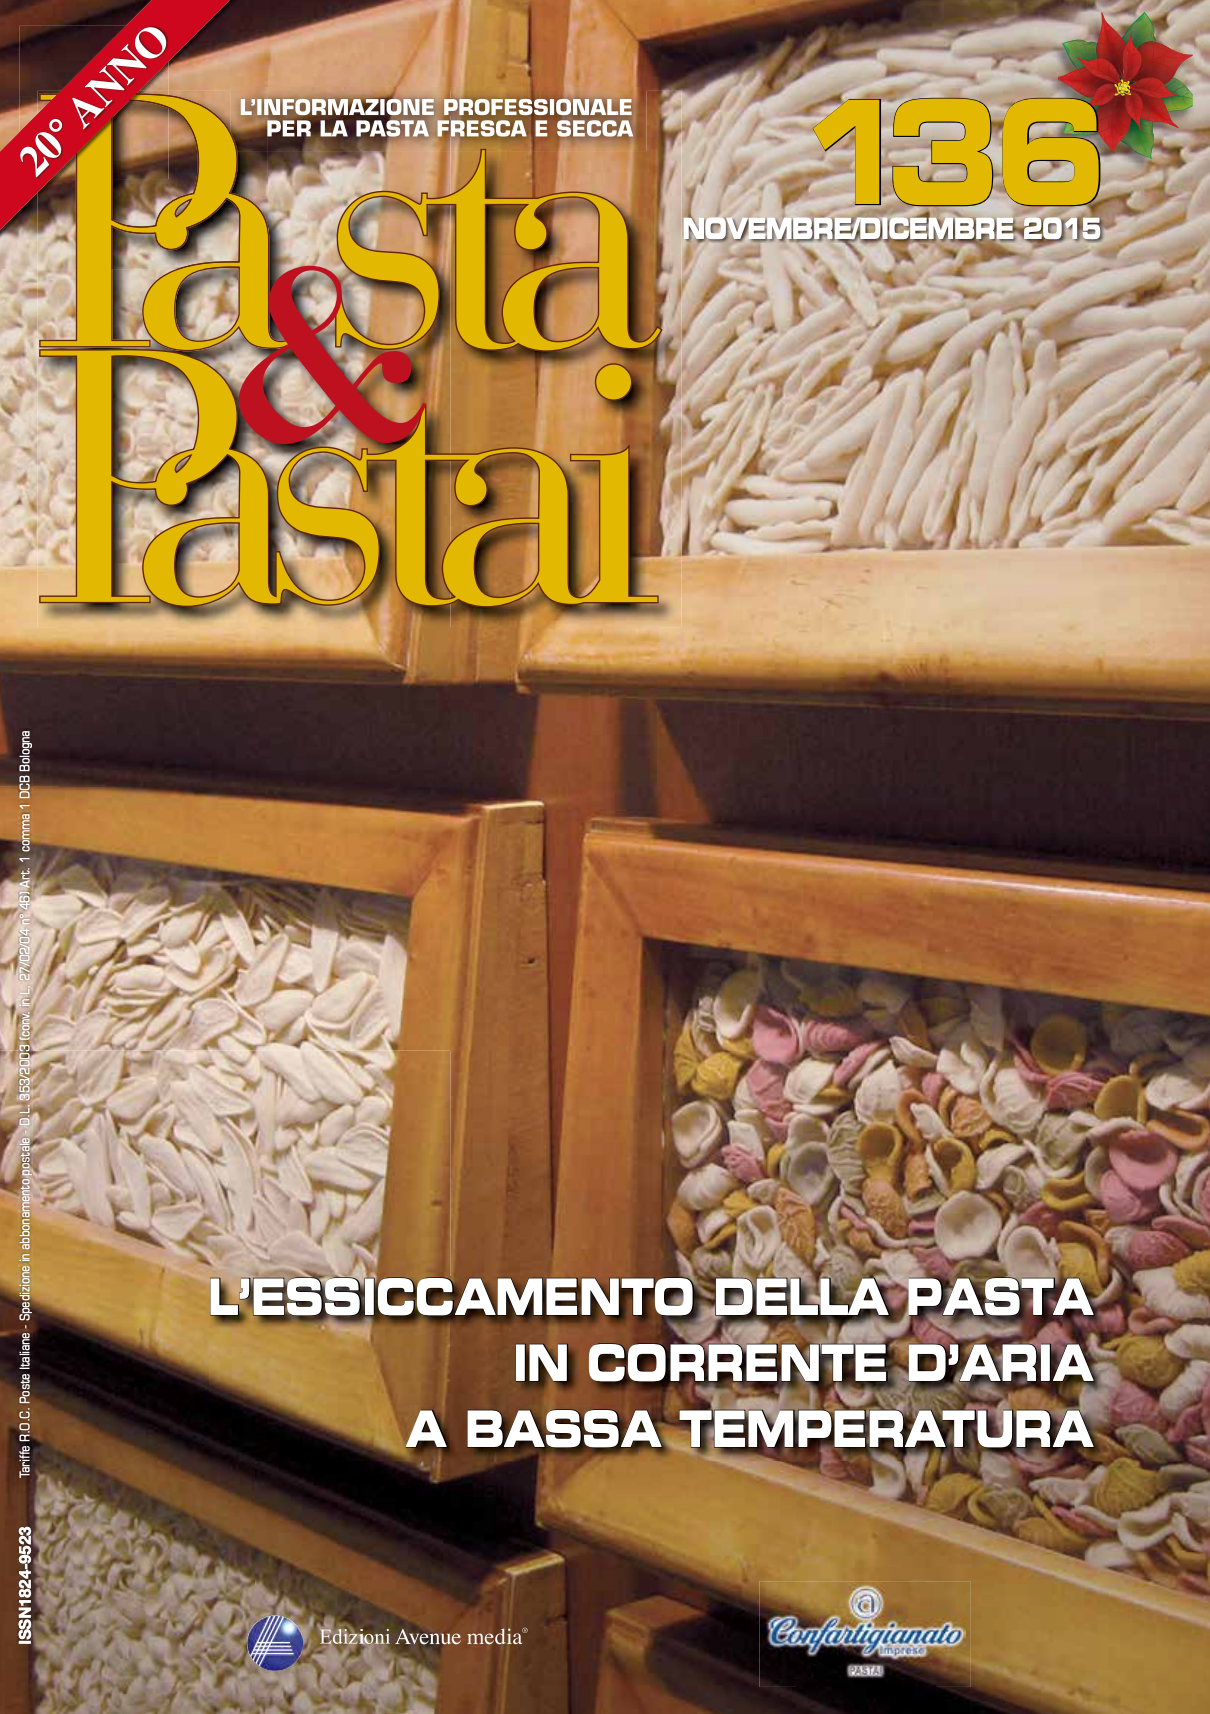 Il pastificio Fabbri sulla rivista Pasta&Pastai: il pastificio che lavora sotto i 38 gradi